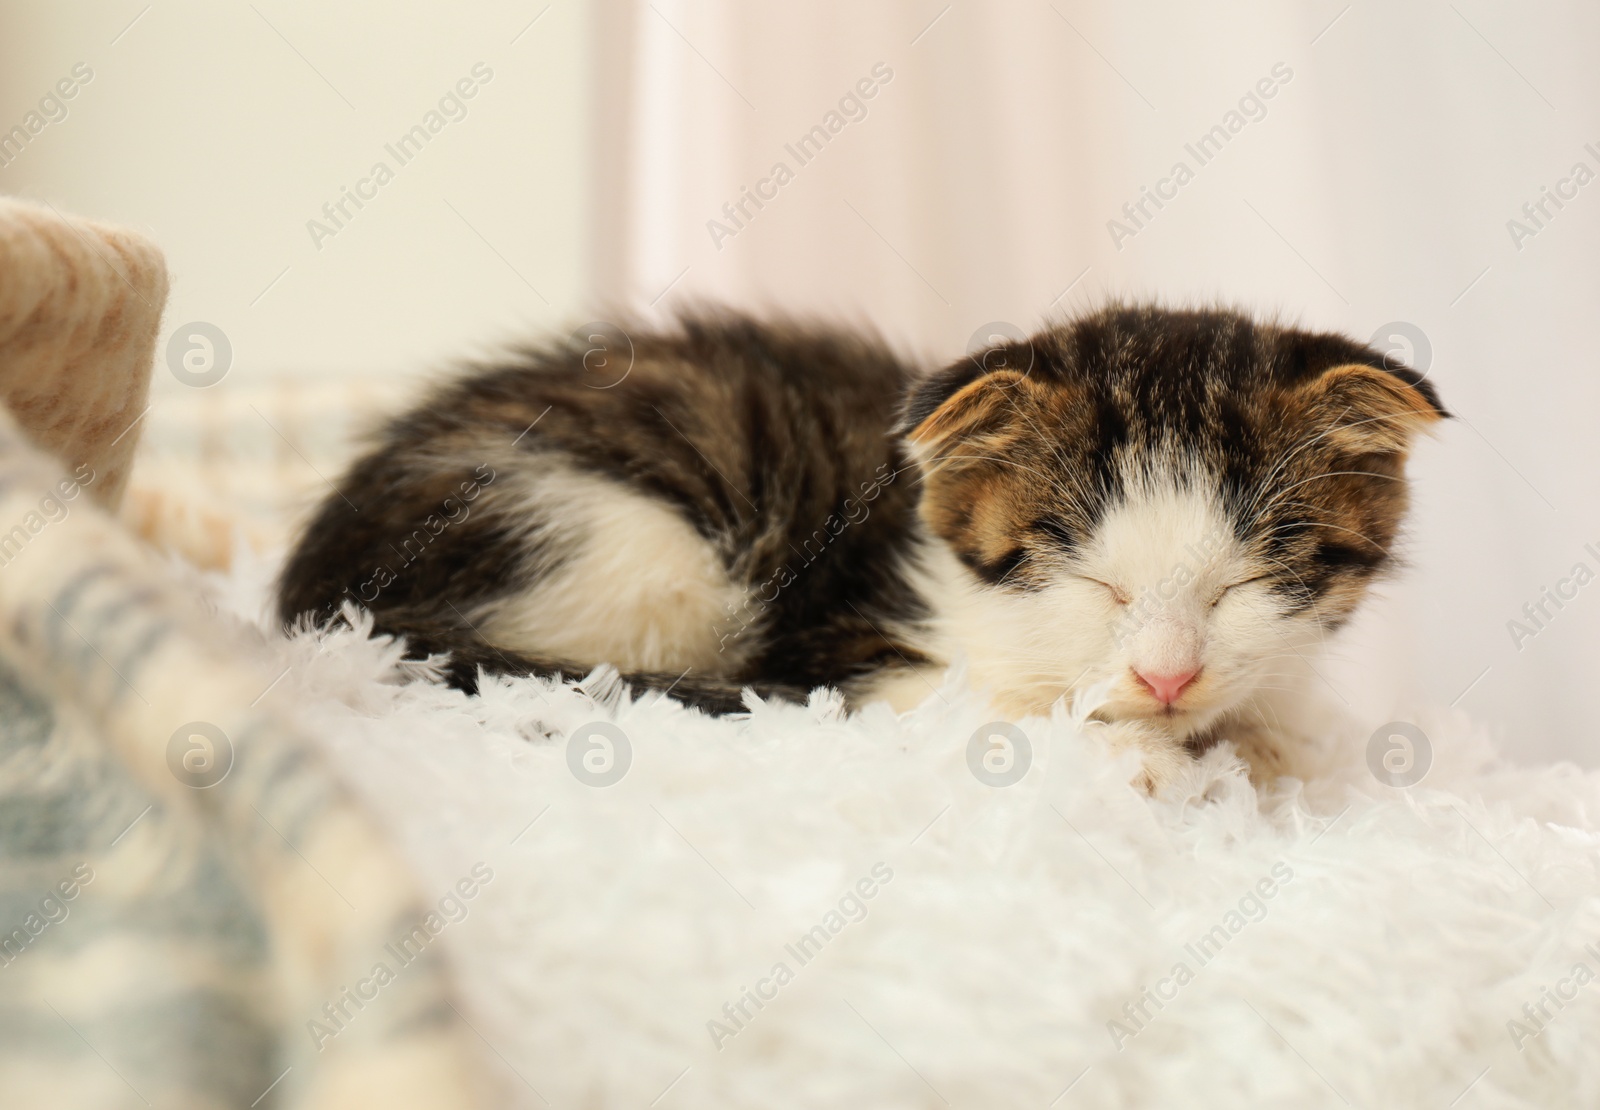 Photo of Adorable little kitten sleeping on white pillow indoors